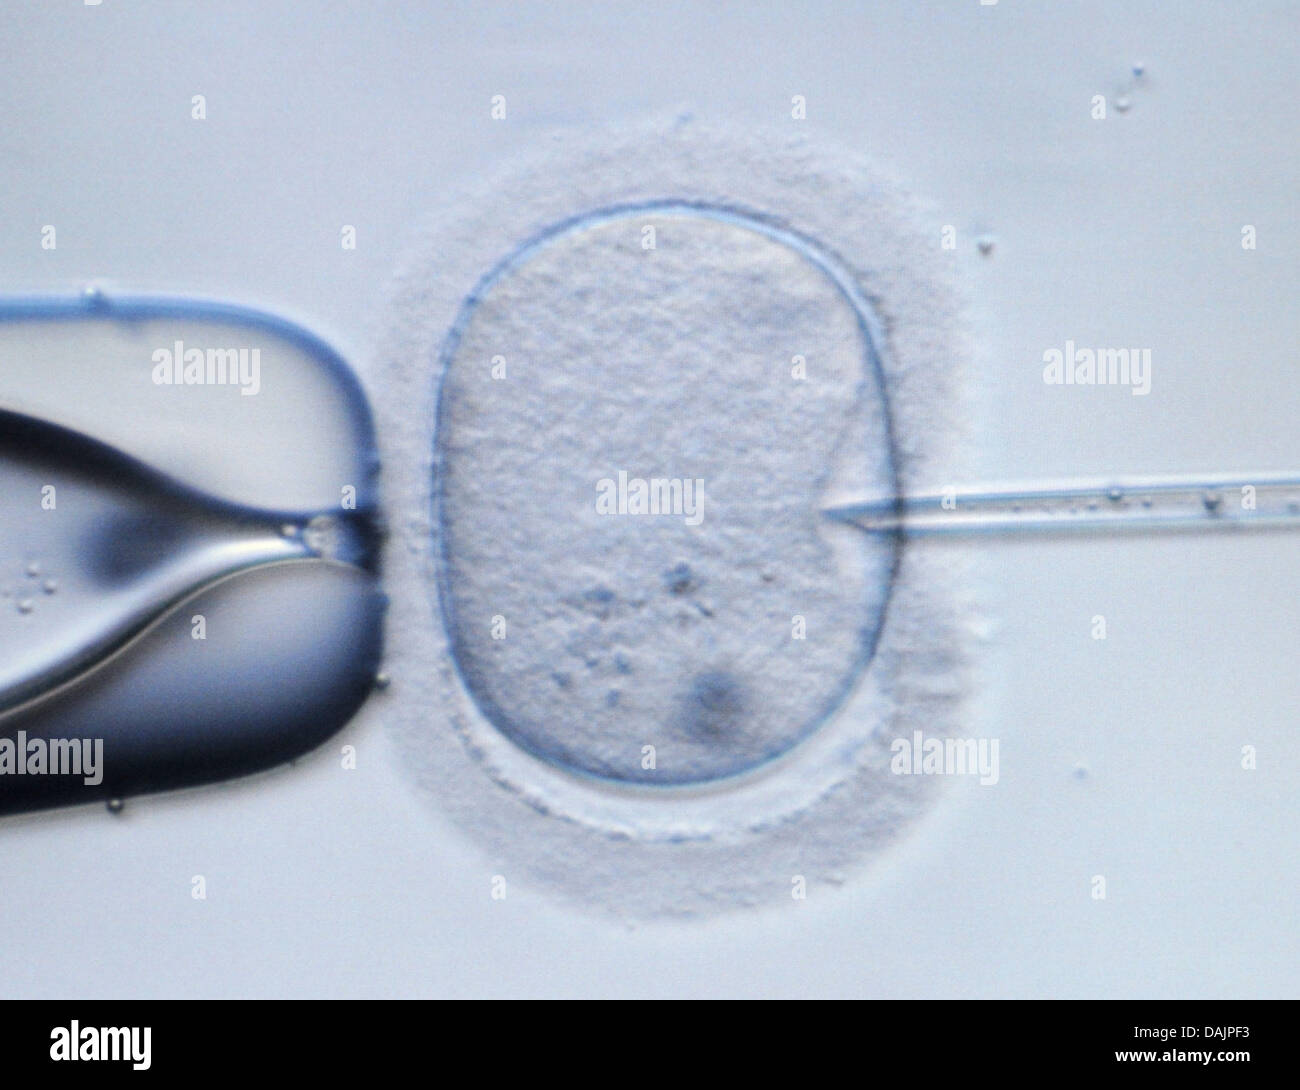 () - ein Dpa-Datei Bild datiert 9. Februar 2009 zeigt eine mikroskopische Bild einer menschlichen Eizelle wird durch eine Injektionsnadel in einem Labor in Dresden, Deutschland punktiert. Die genetische Präimplantationsdiagnostik ist ein umstrittenes Thema in Deutschland. Foto: Ralf Hirschberger Stockfoto